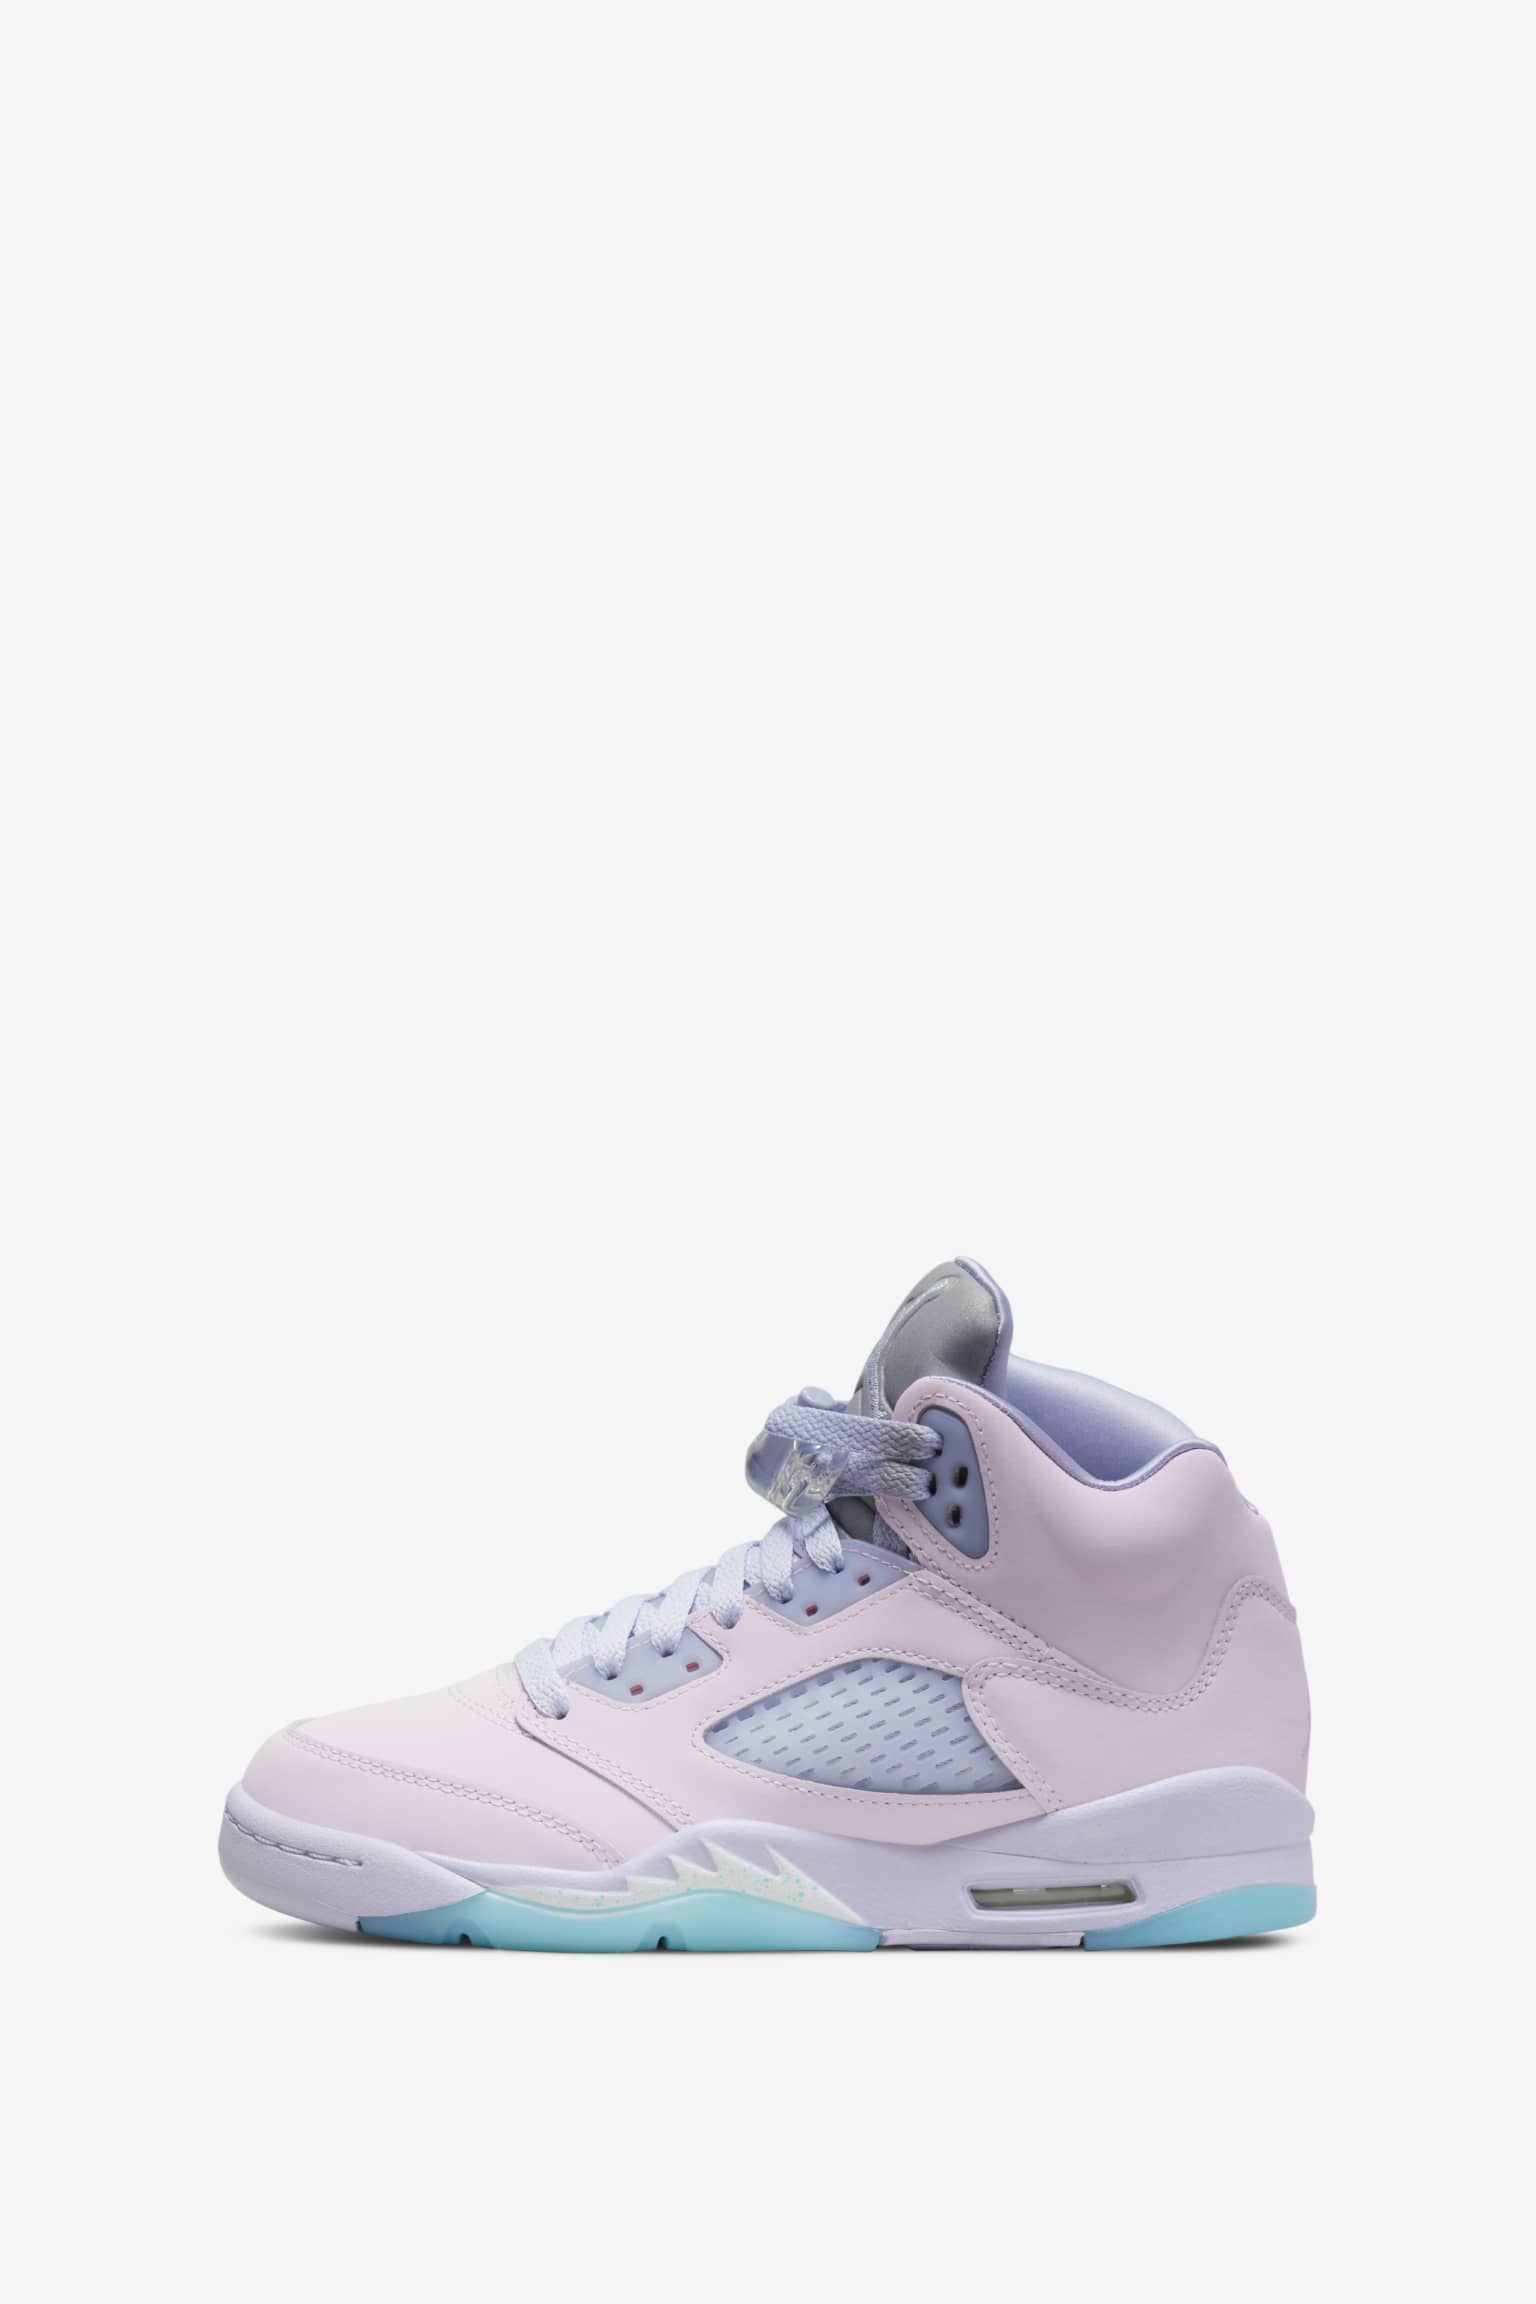 Nike Air Jordan 5 Regal Pink Release Info